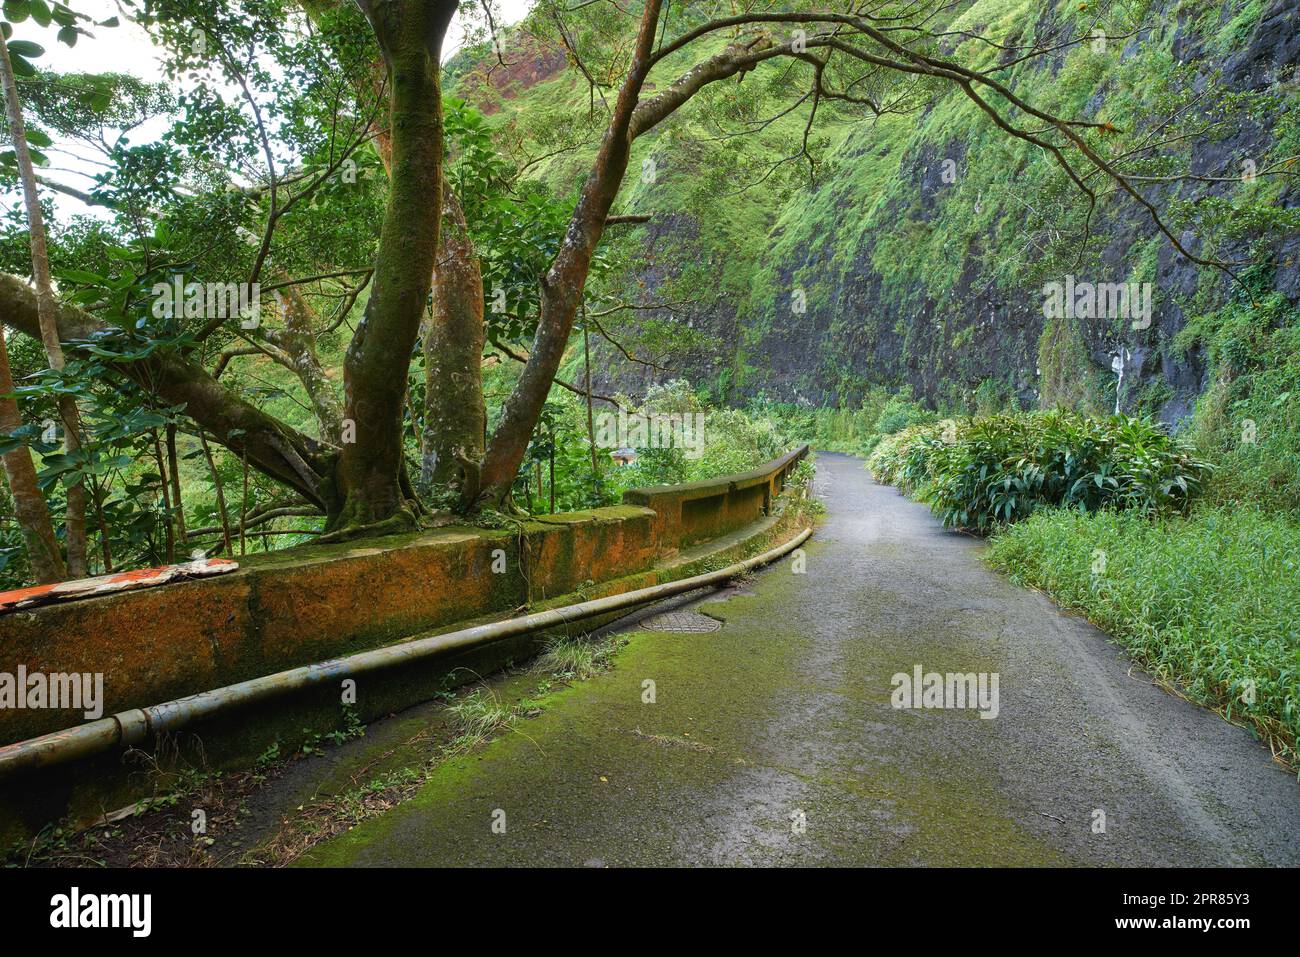 Strada di montagna abbandonata in una foresta pluviale. Foreste autoctone di Oahu vicino al vecchio Pali Highway Crossing nelle Hawaii. Natura selvaggia in un paesaggio misterioso. Meraviglie nascoste sui sentieri escursionistici Foto Stock